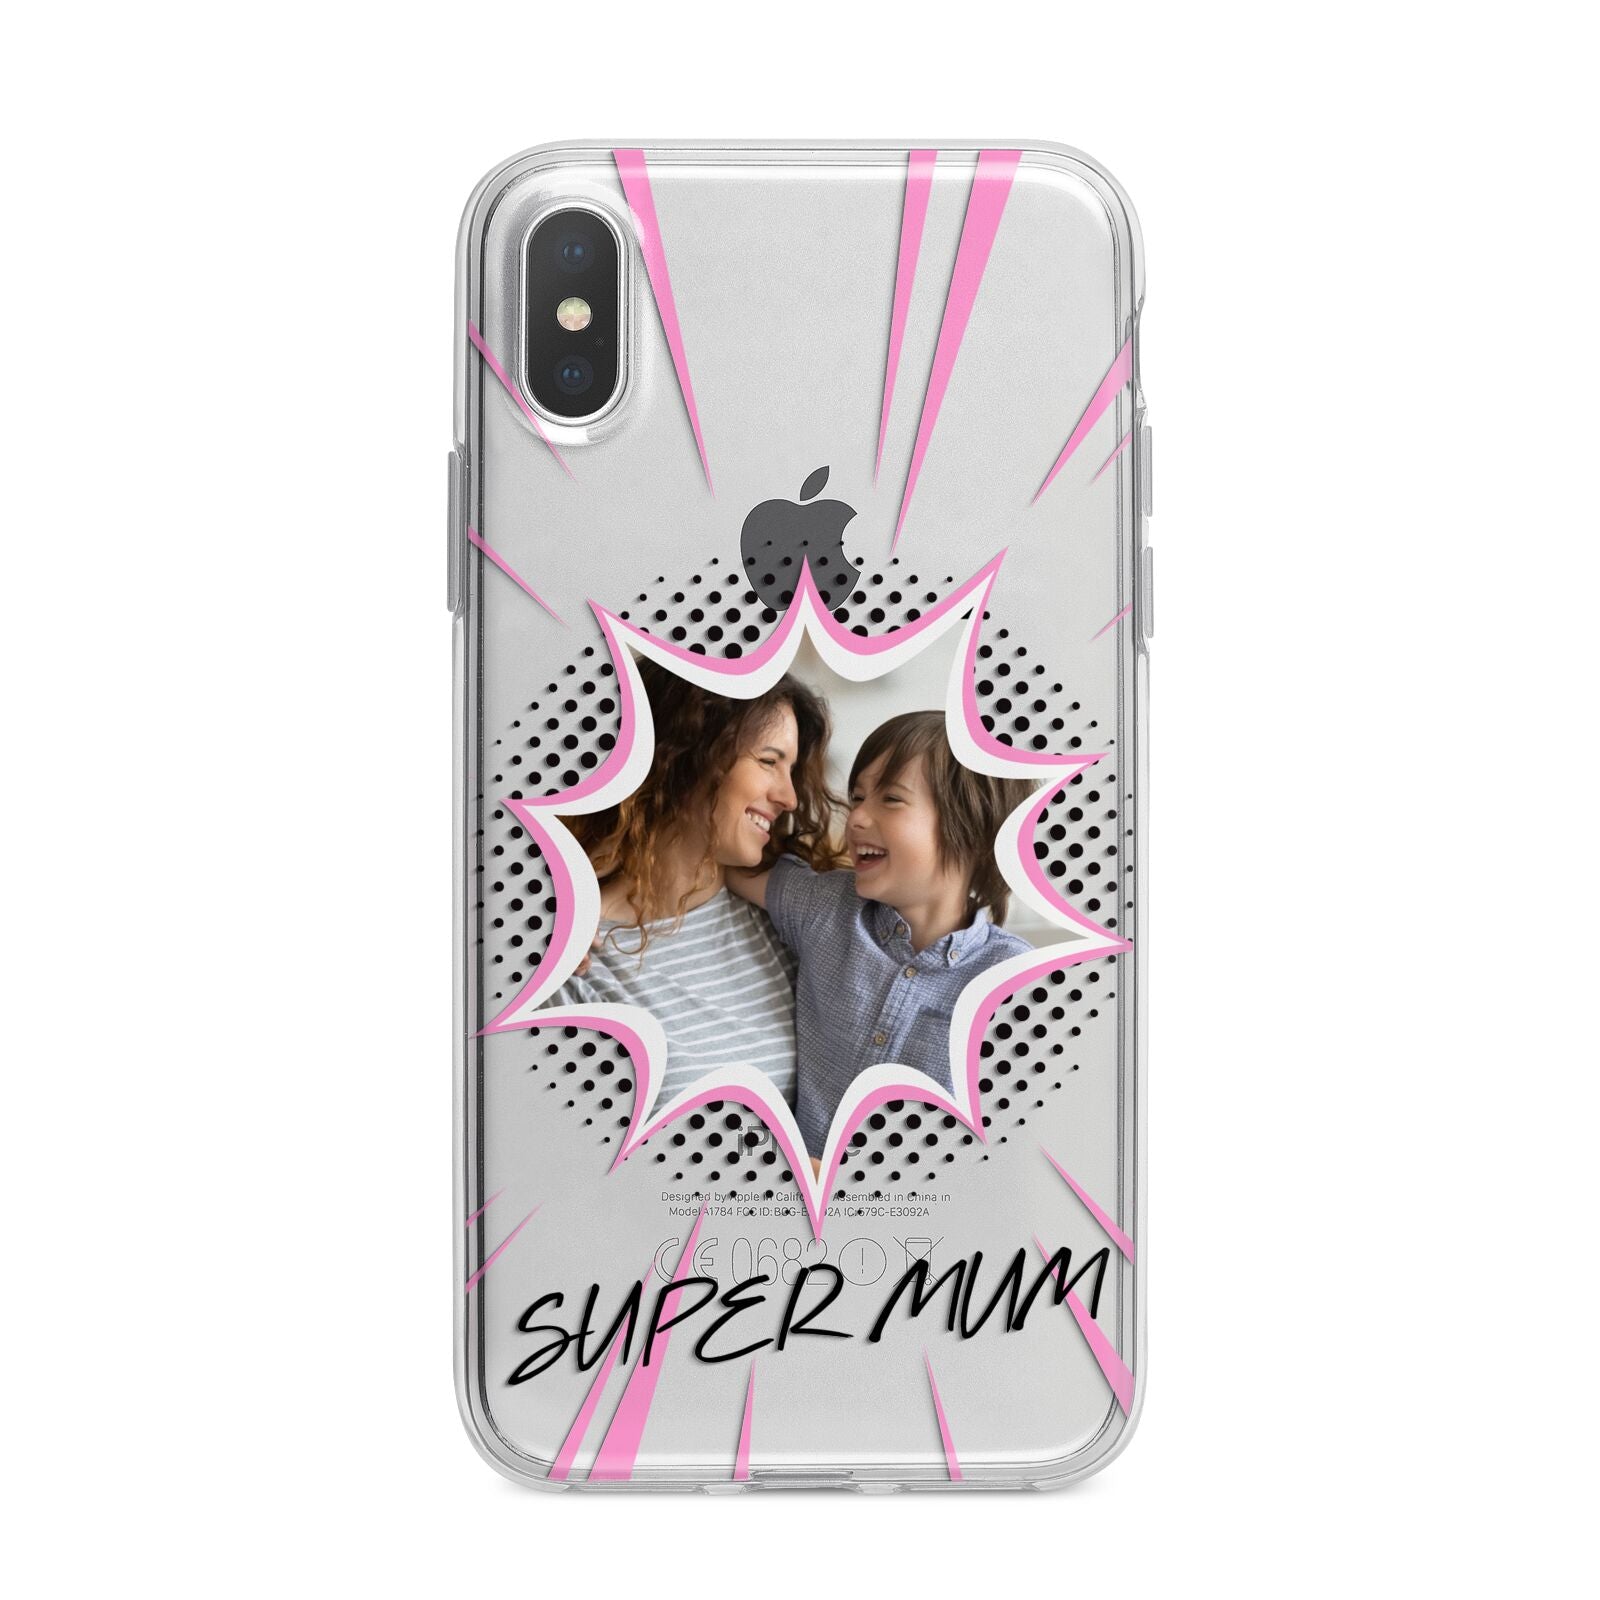 Super Mum Photo iPhone X Bumper Case on Silver iPhone Alternative Image 1